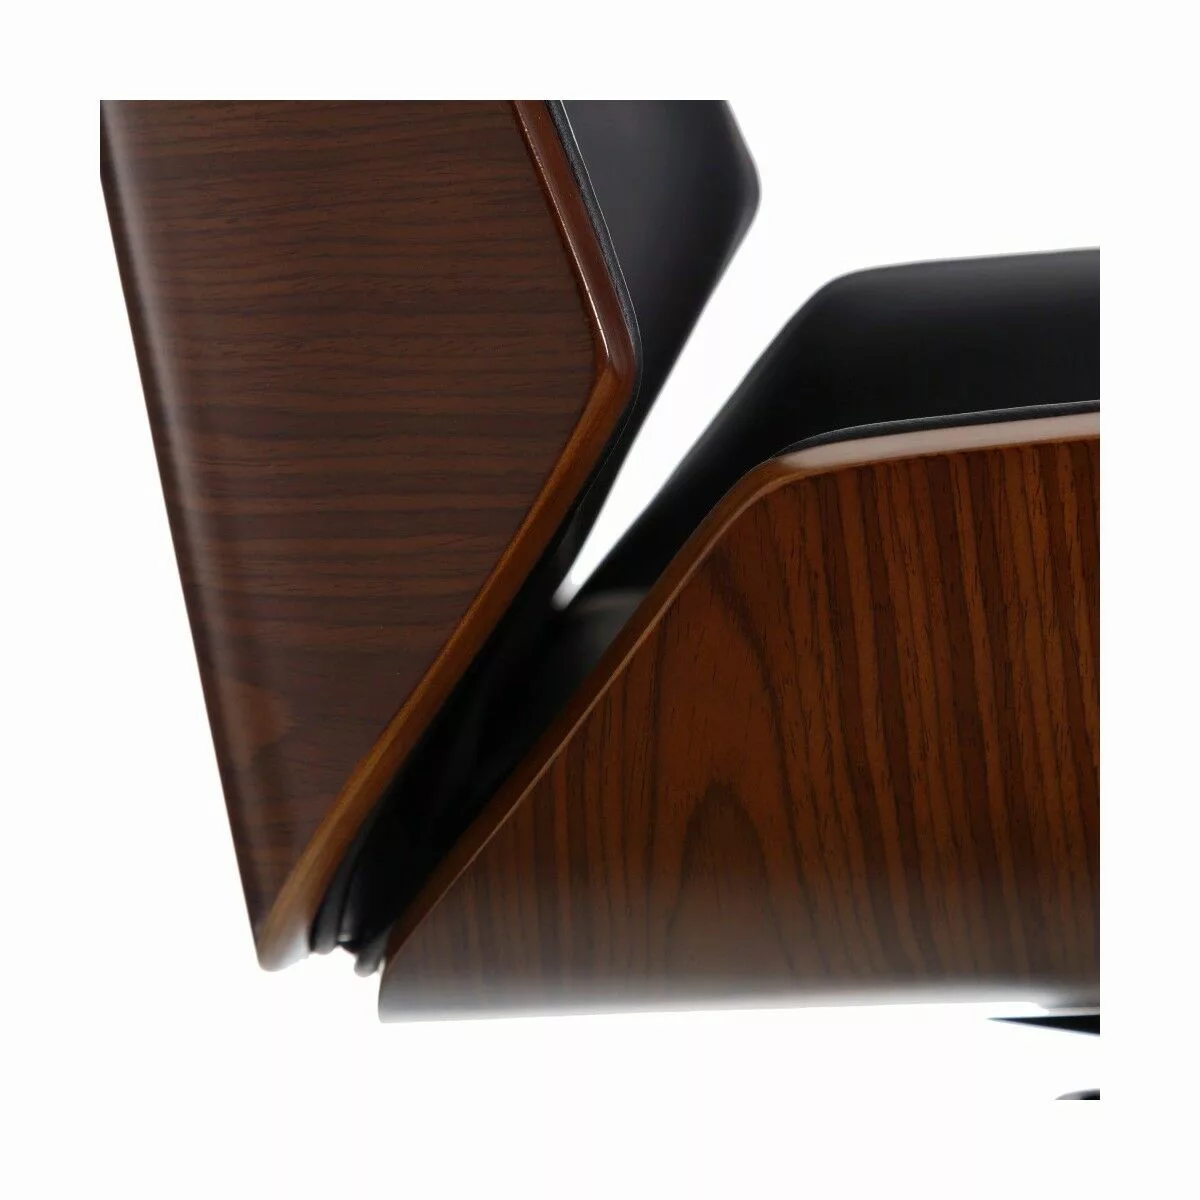 Sessel 65 X 66 X 108,5 Cm Schwarz Braun günstig online kaufen